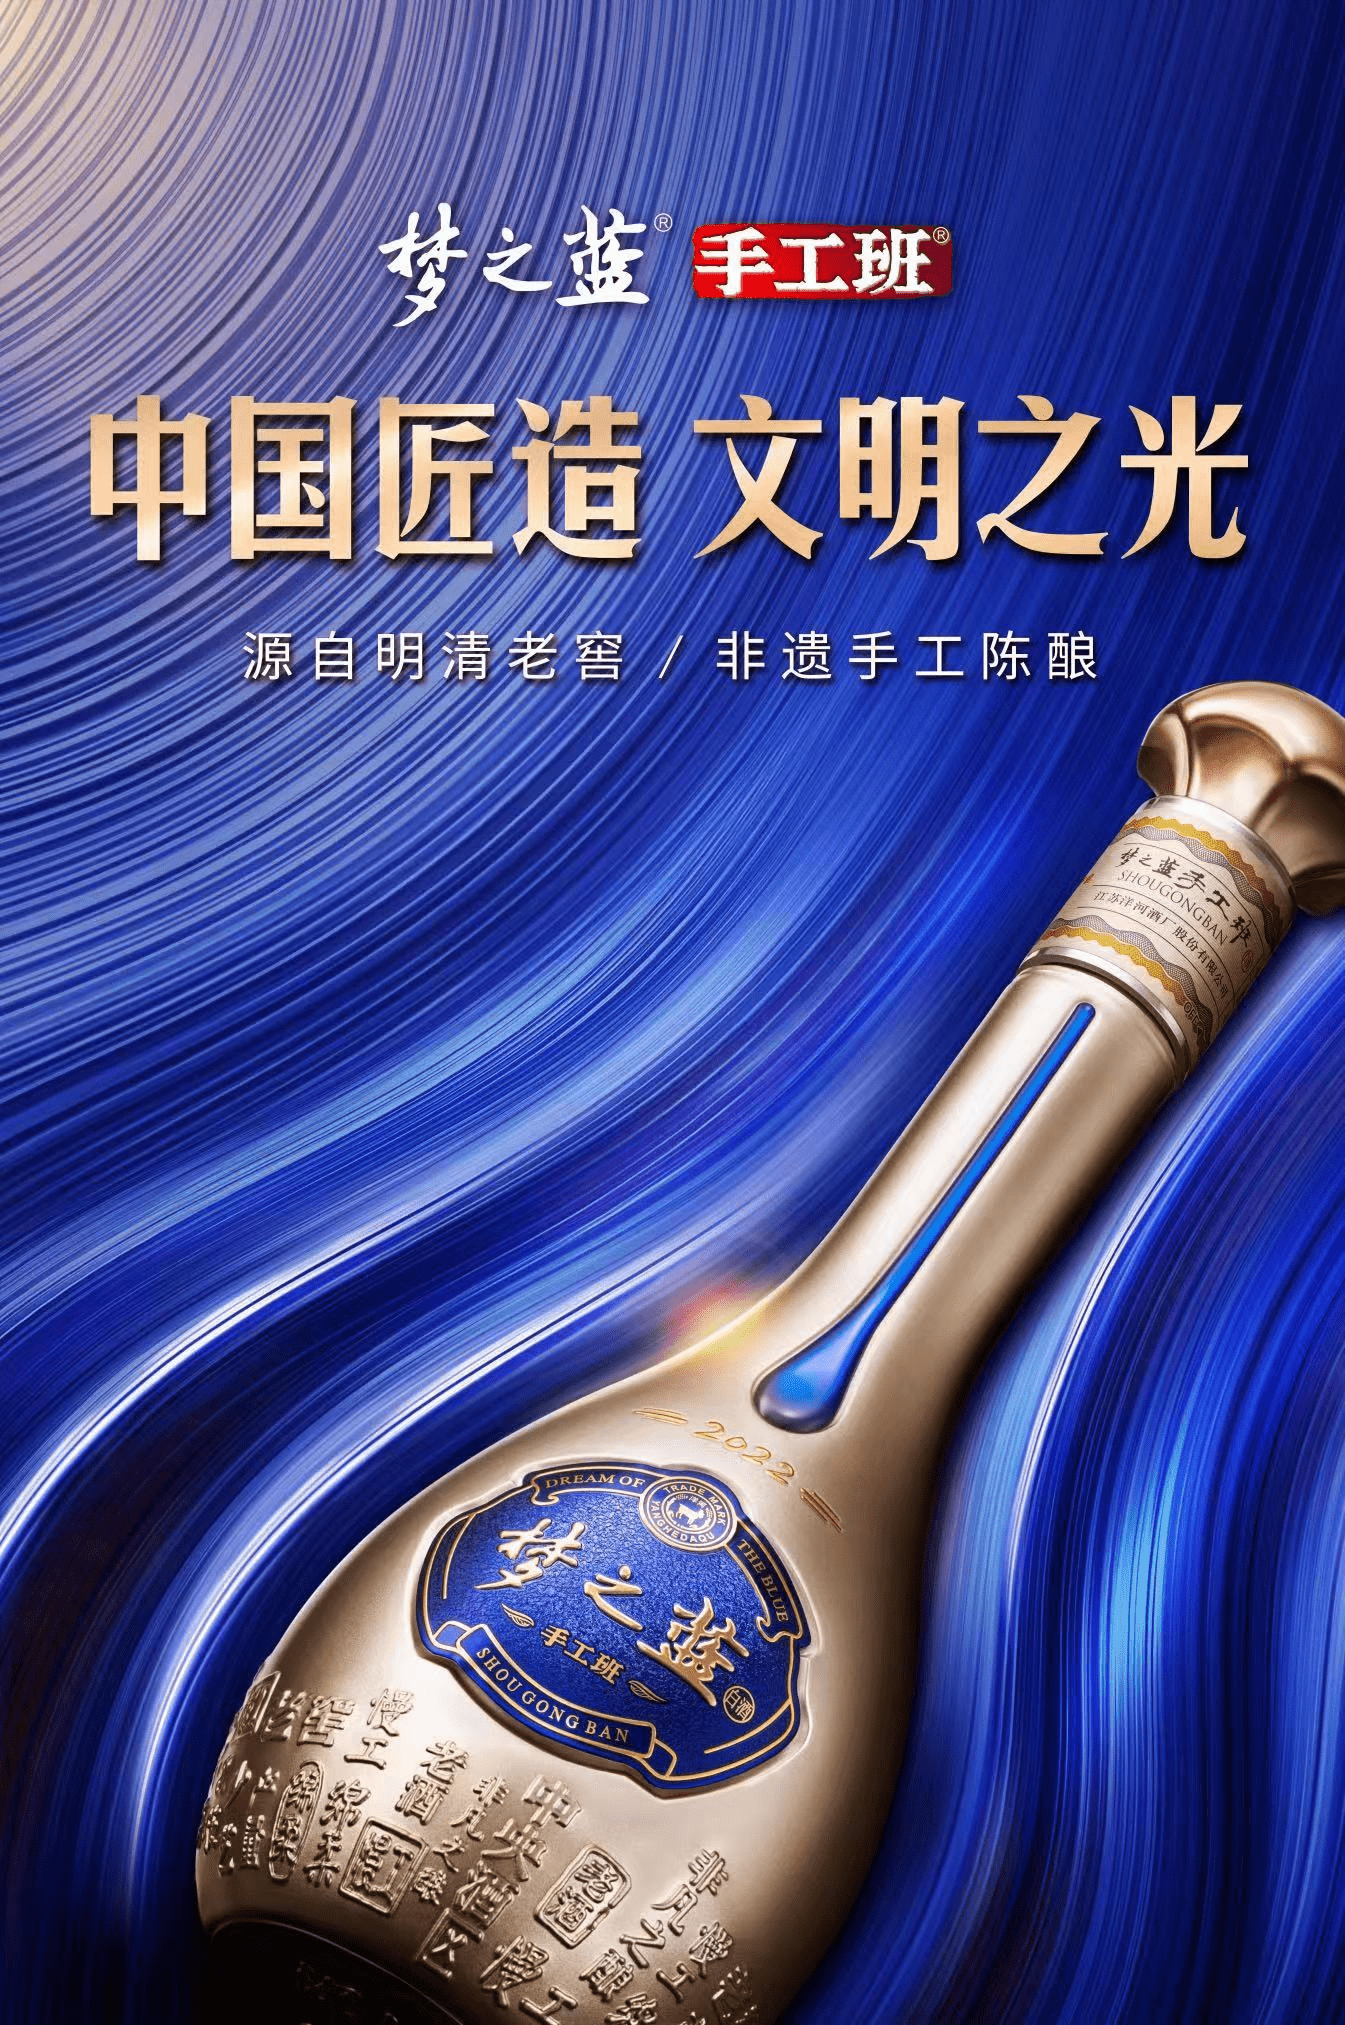 洋河股份连续七年荣列总榜TOP100、白酒行业TOP3-usdt钱包app下载